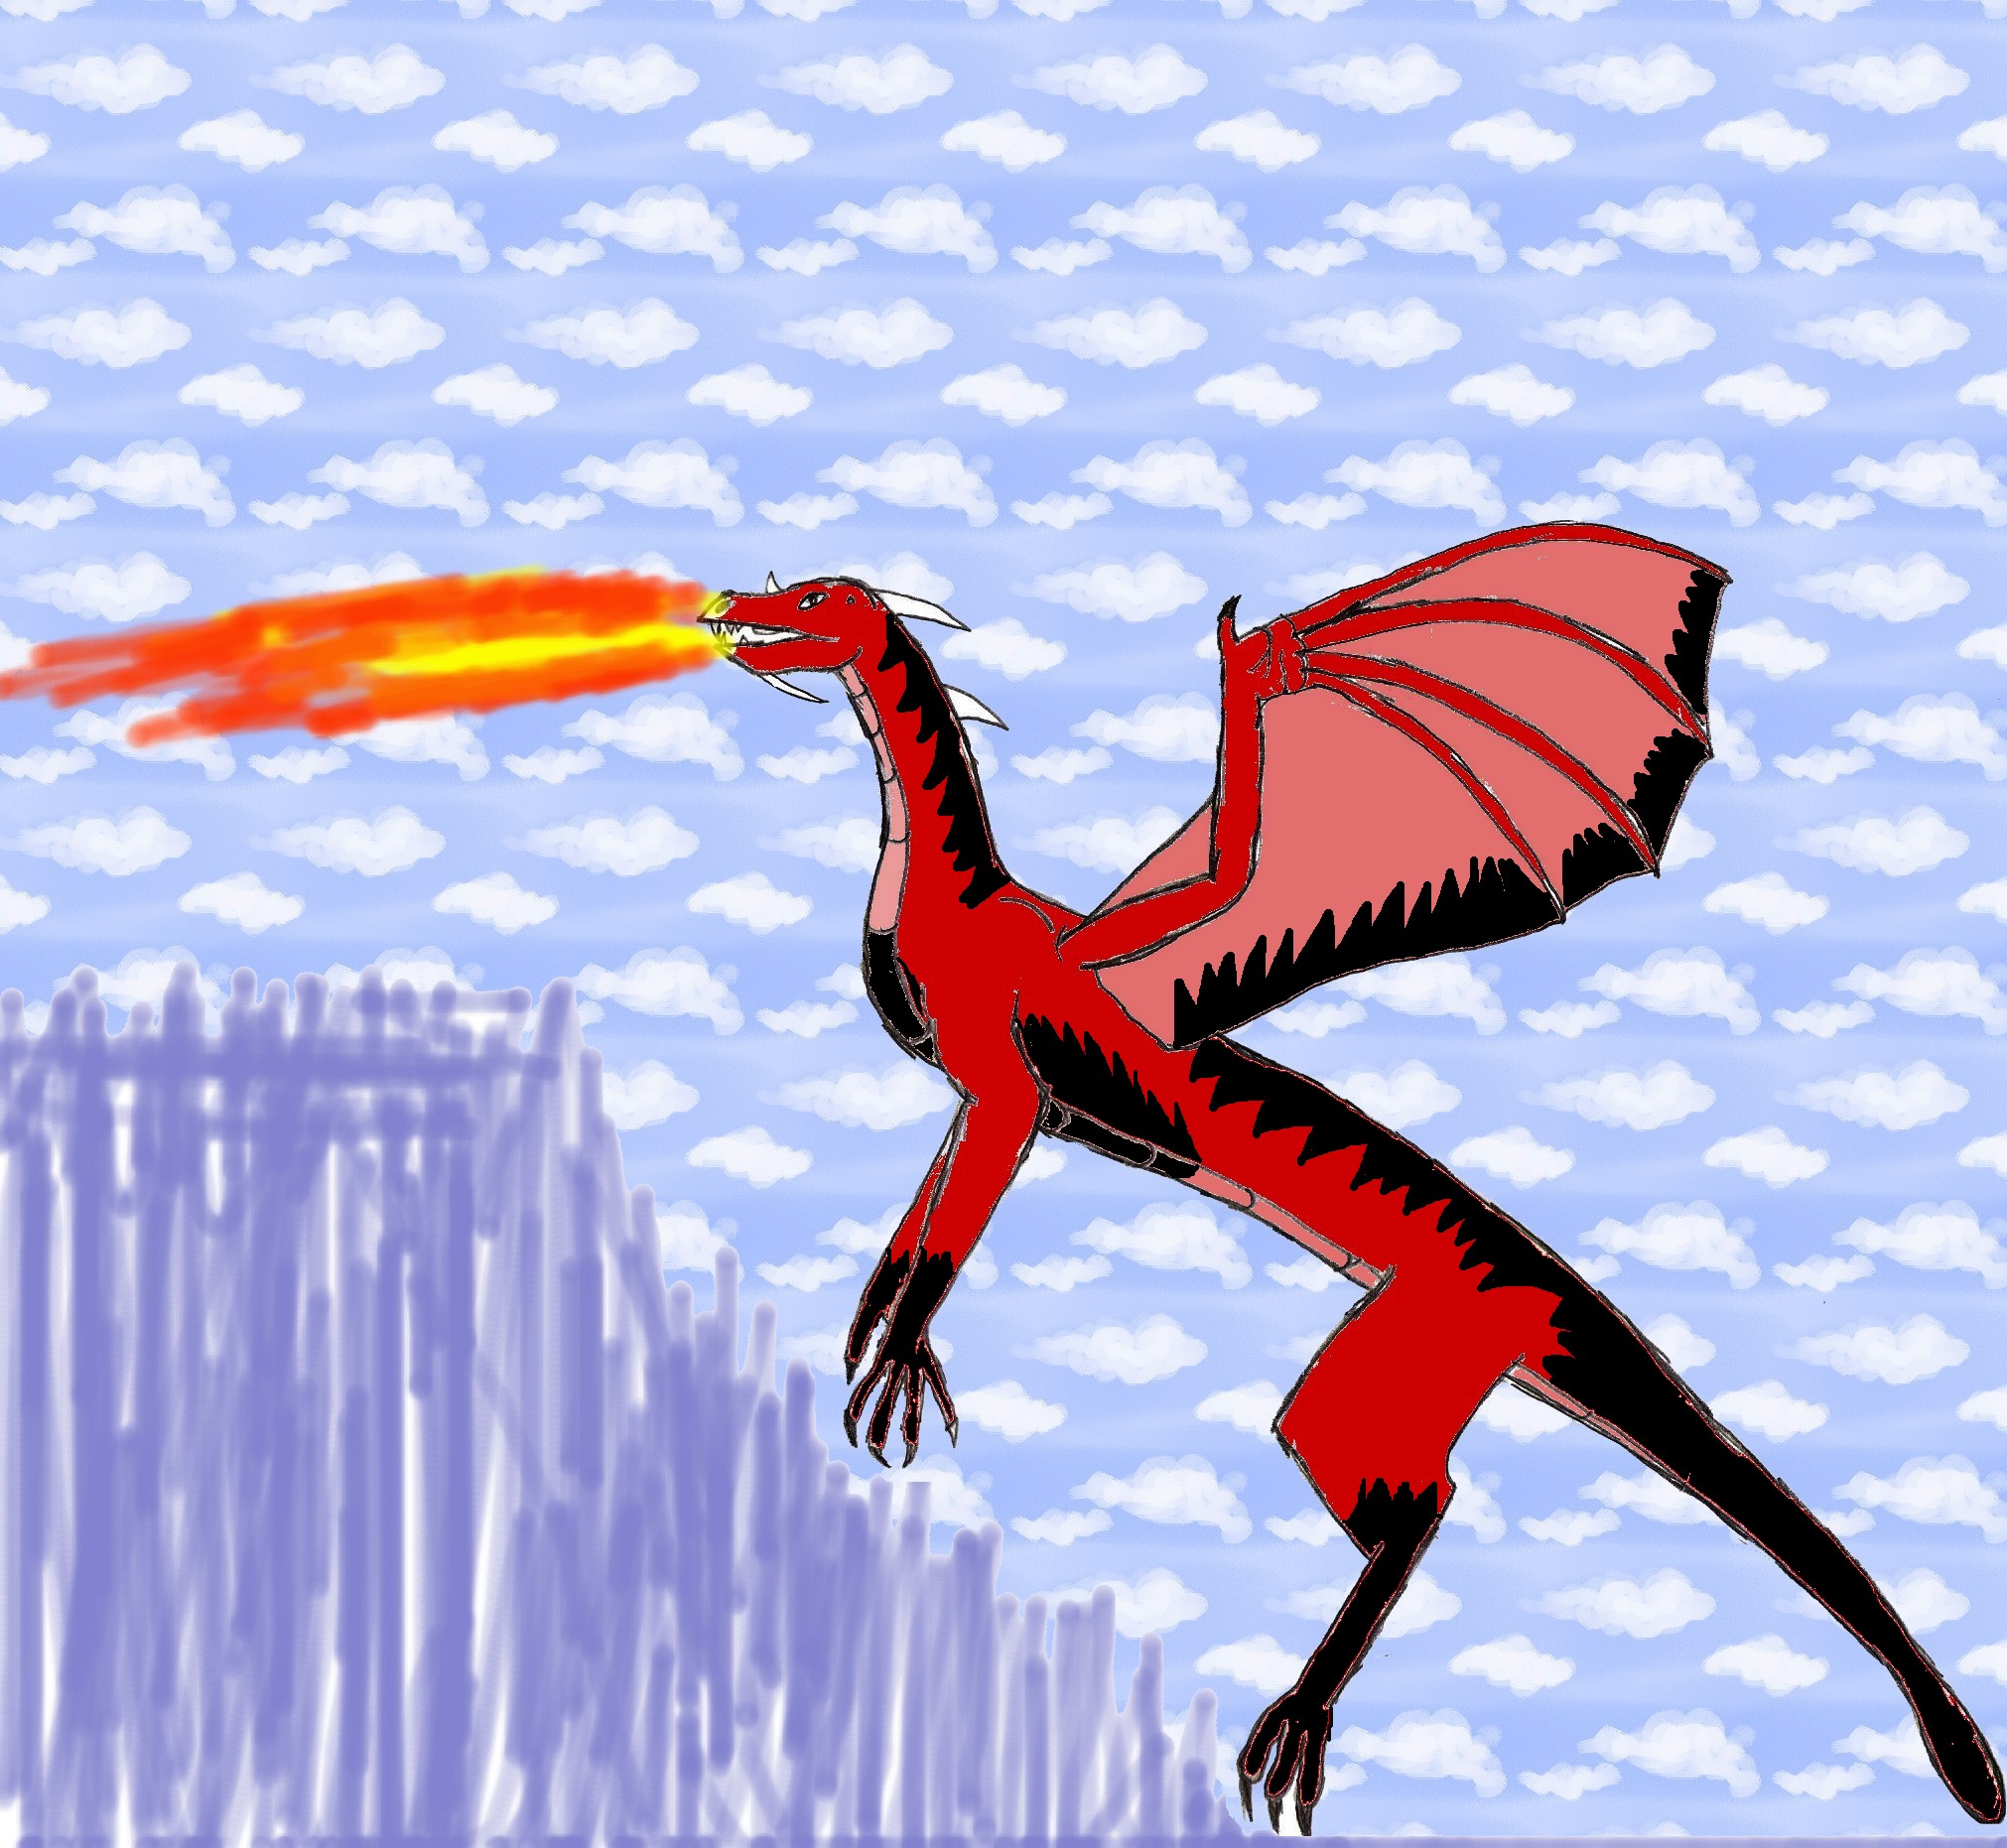 dragon for Fluffy by Setofan93